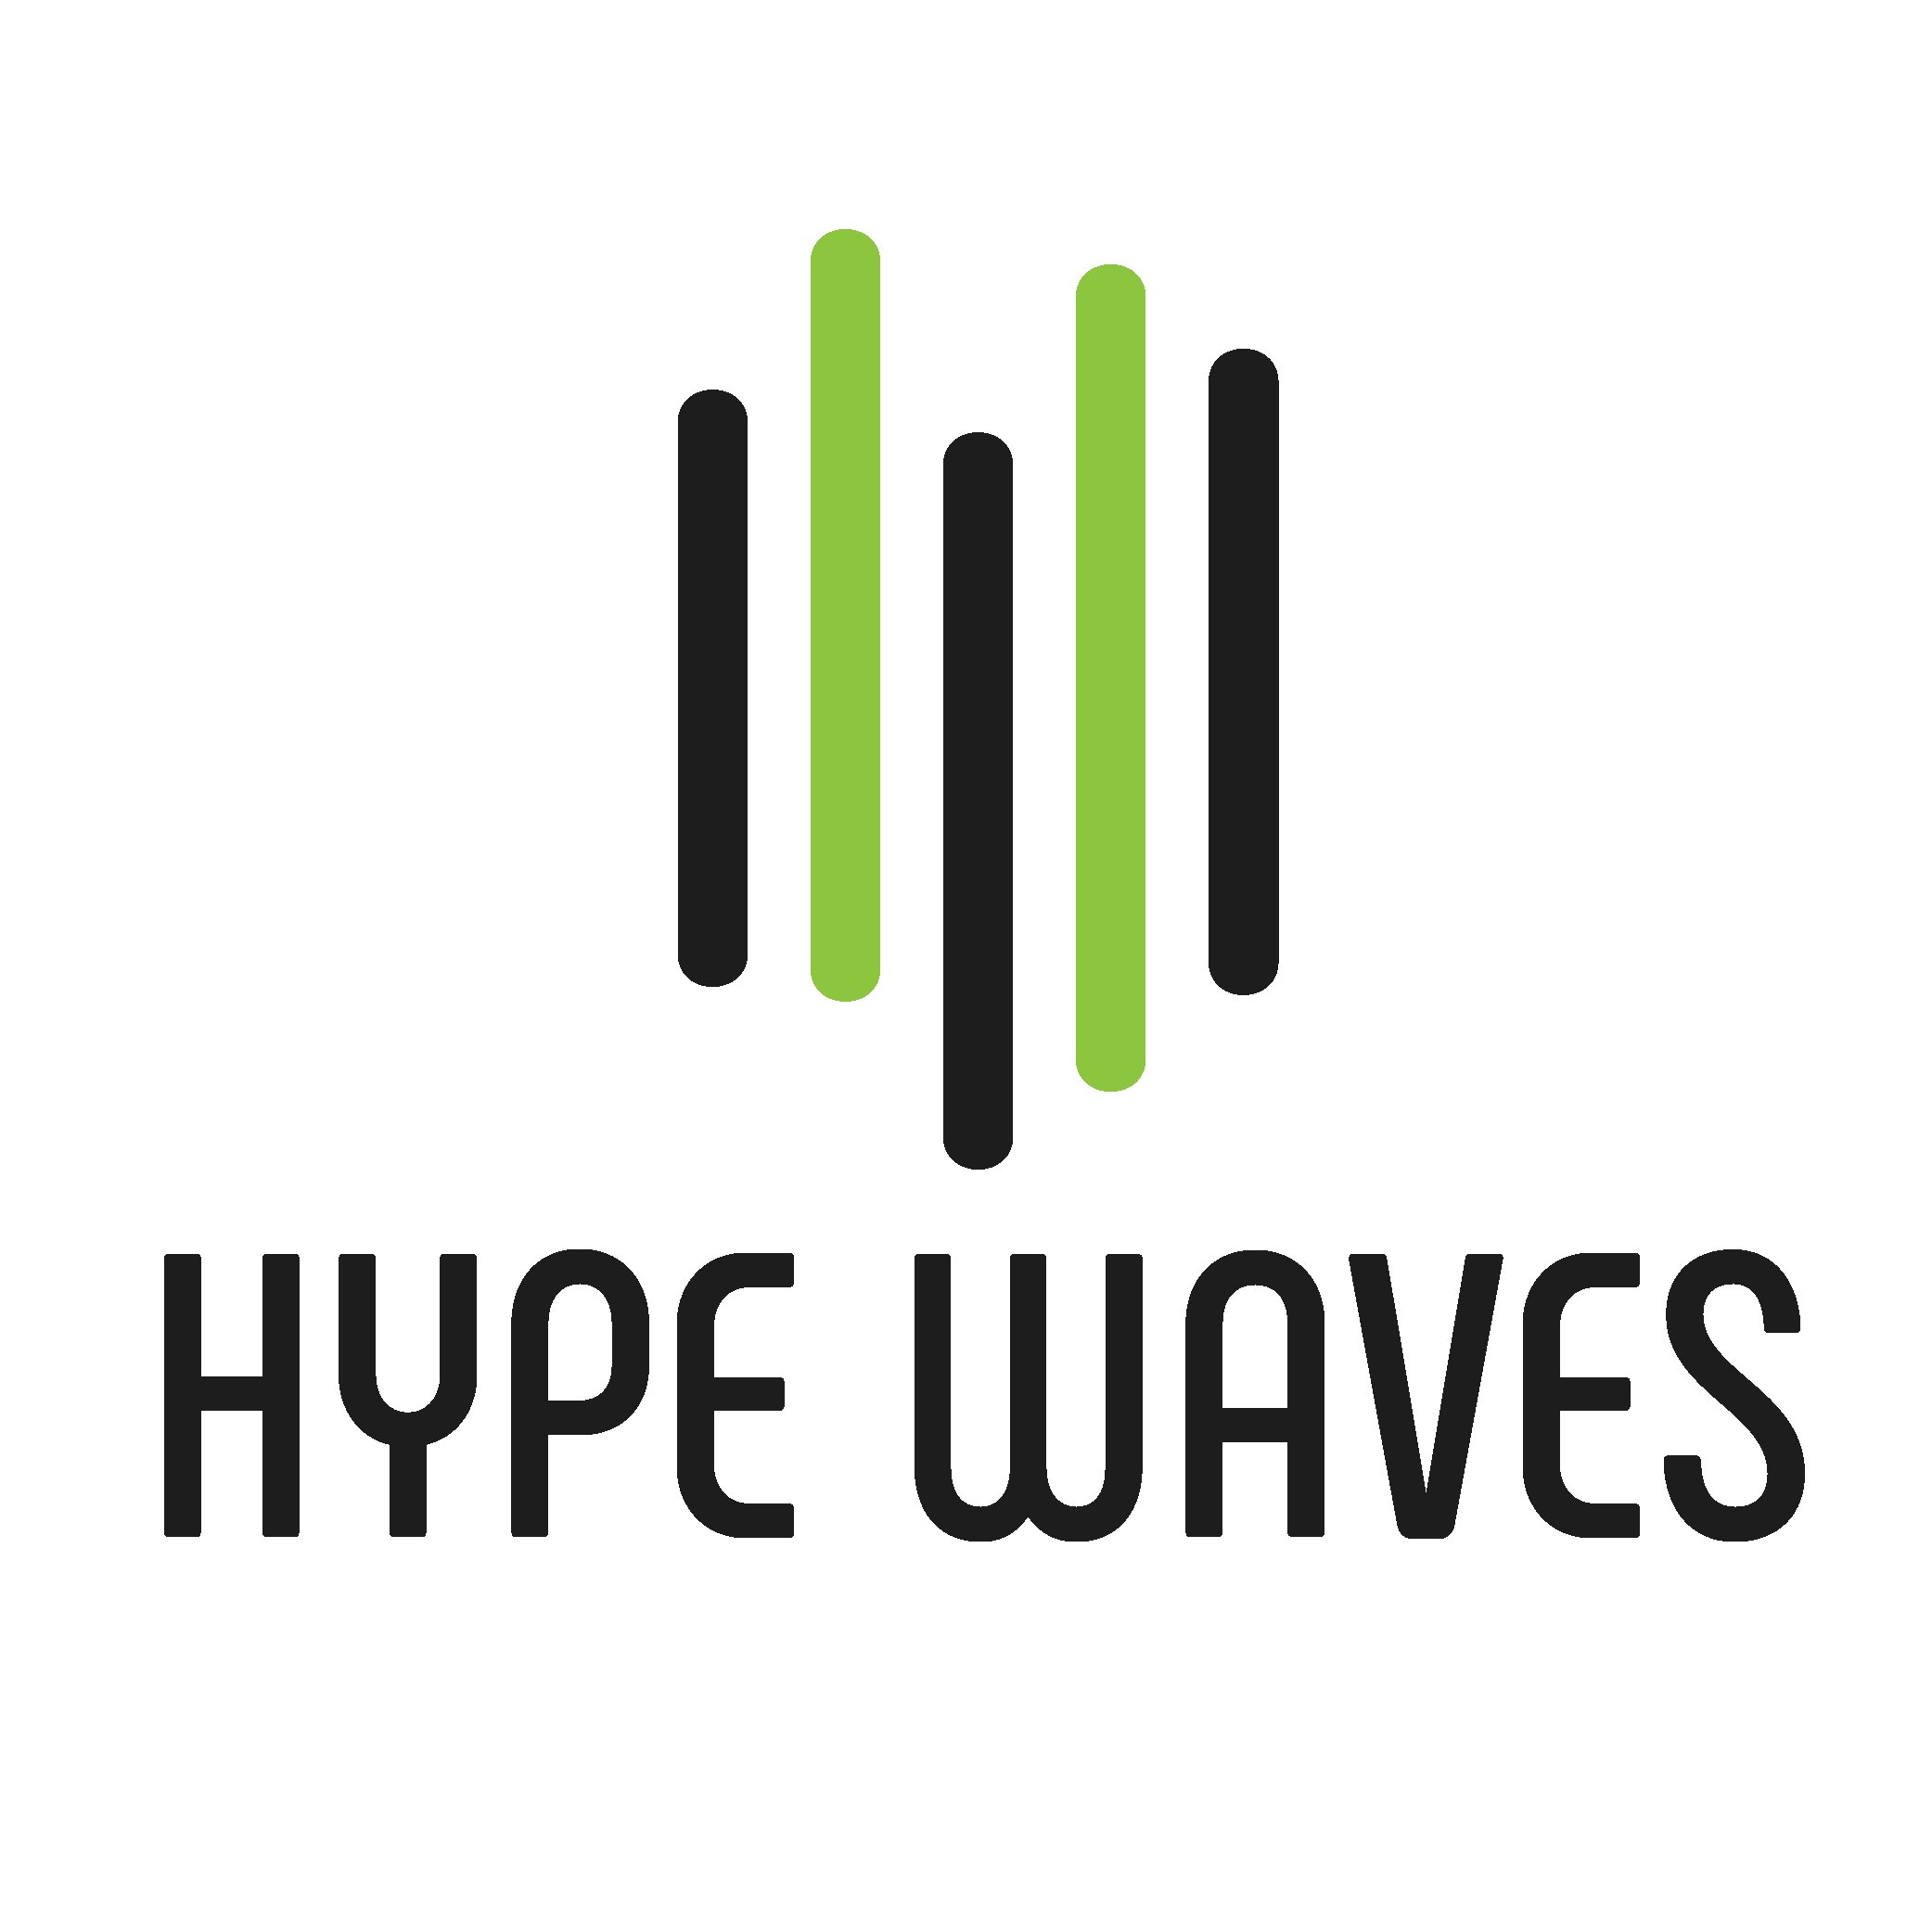 Hype Waves 1 - Melee Singles